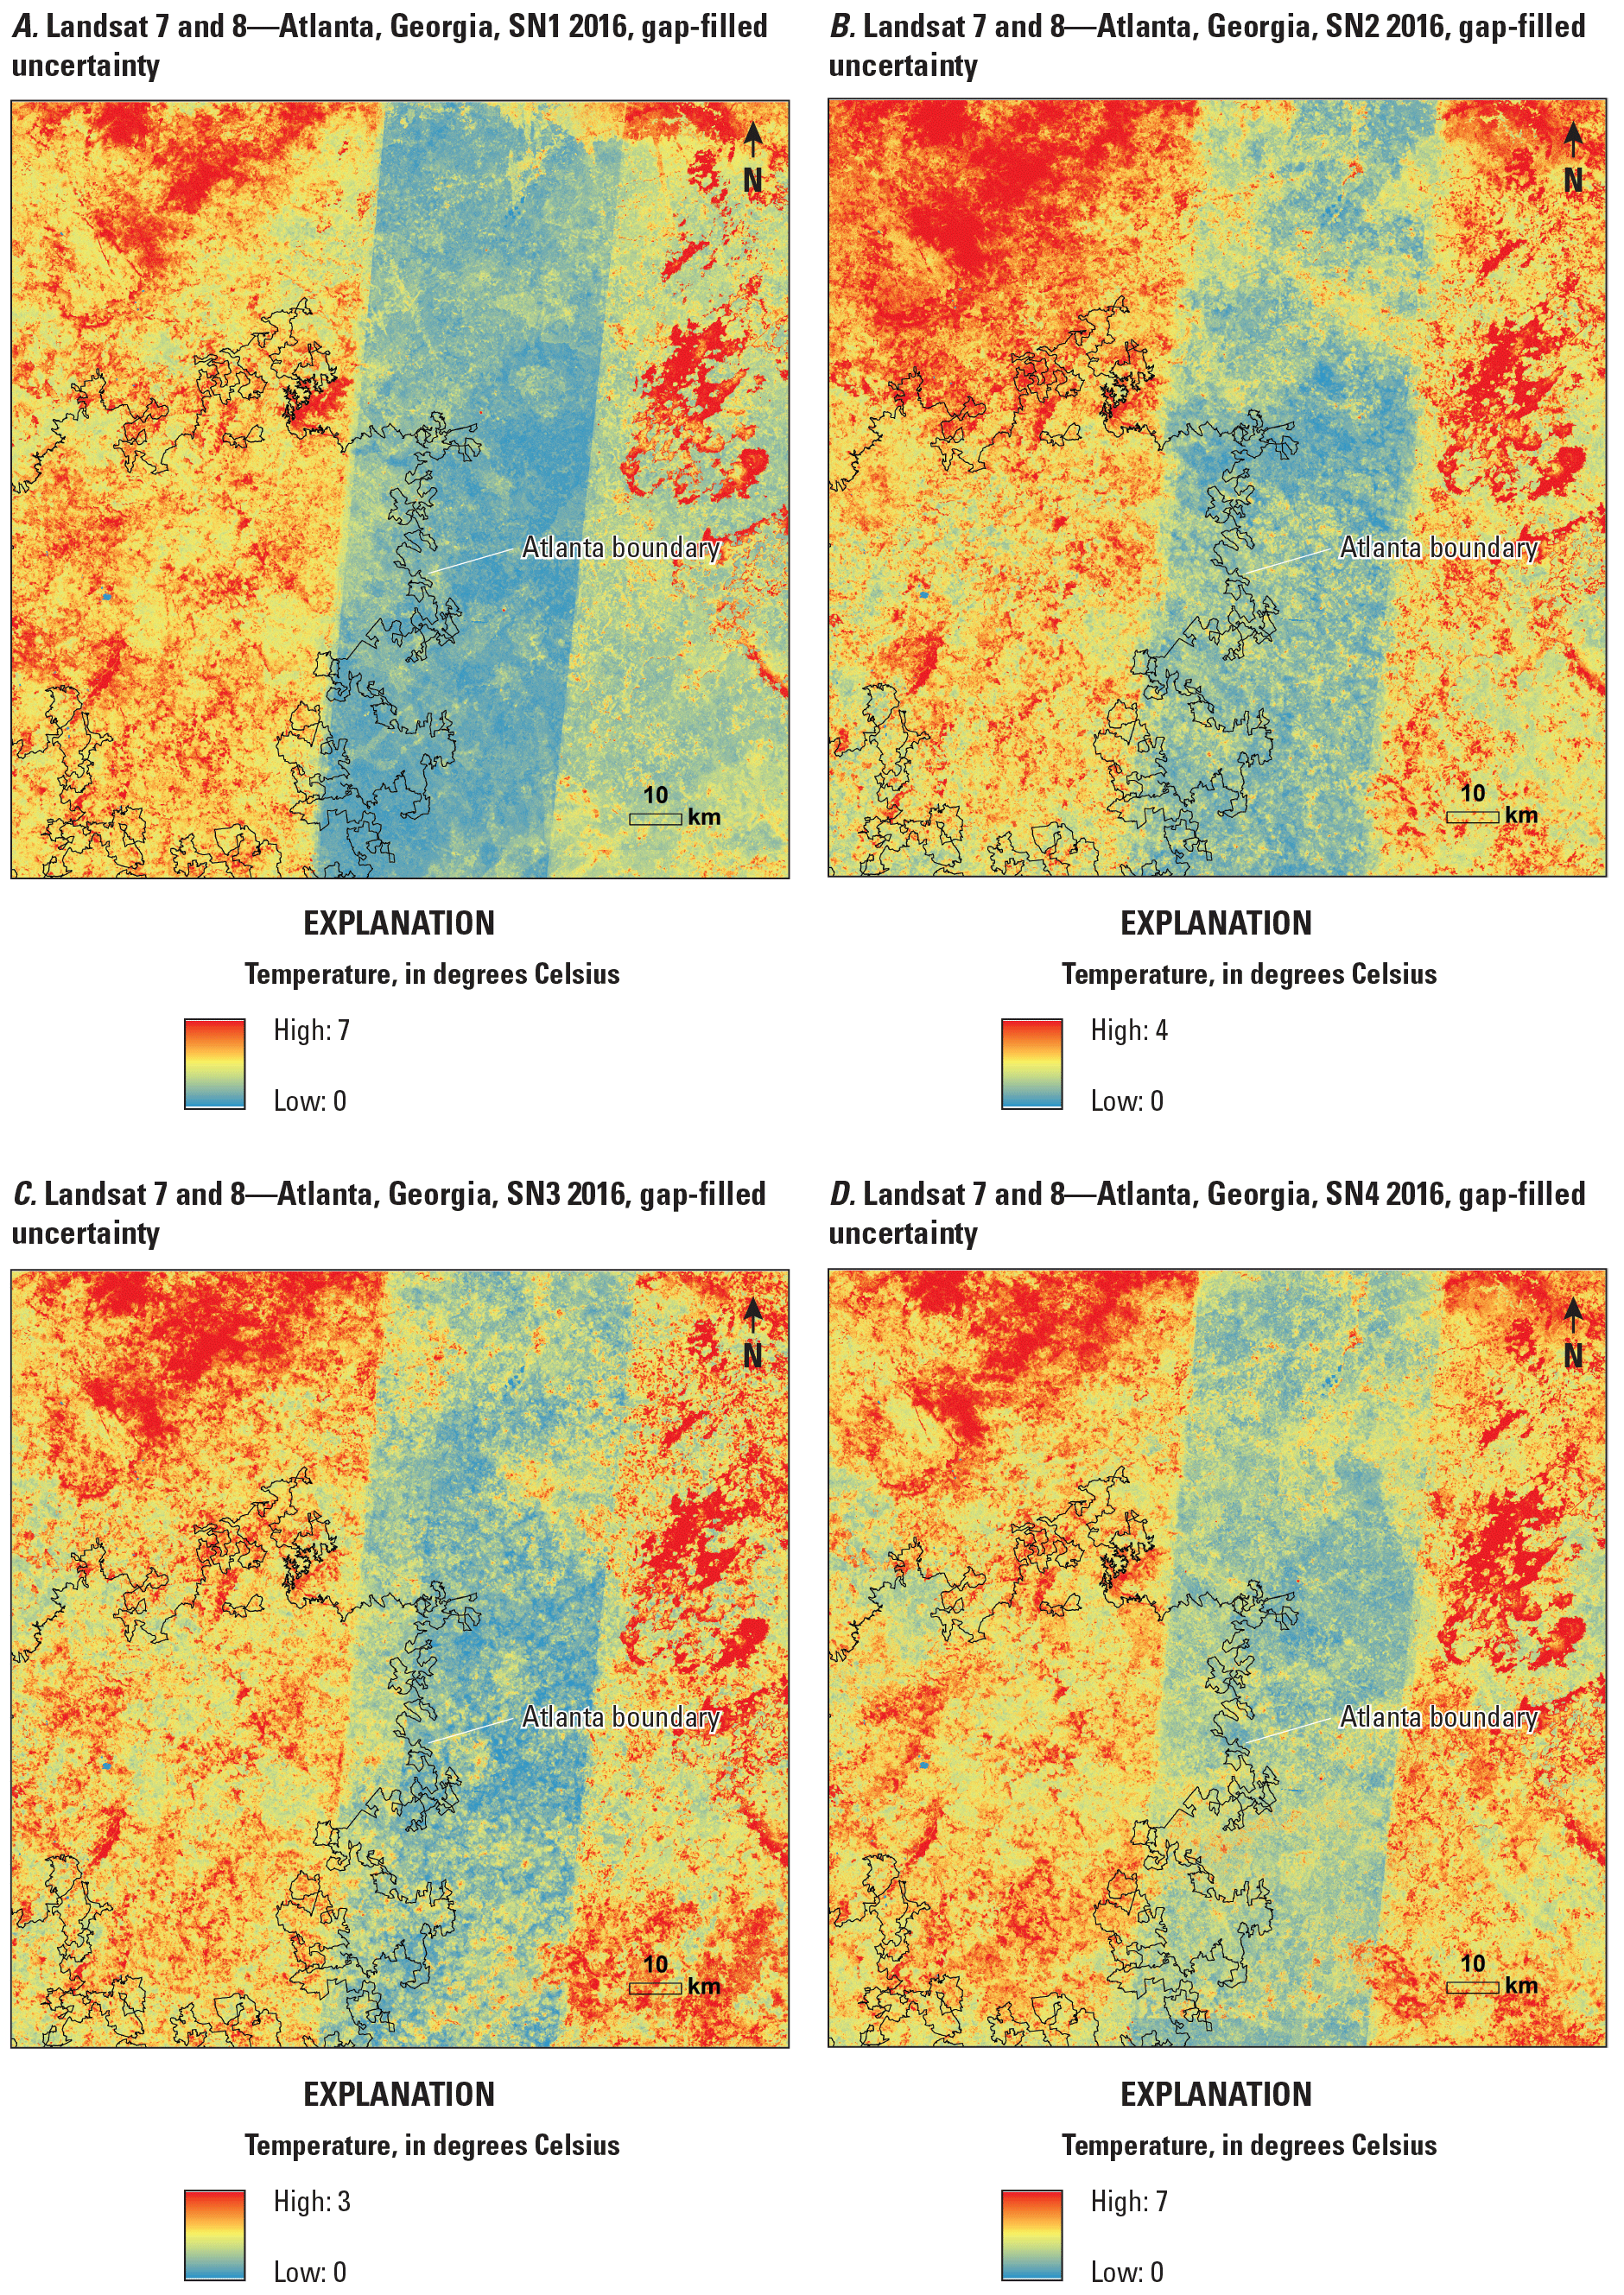 Uncertainty maps of seasonal gap-filed Landsat surface temperature in Atlanta, Georgia,
                        2016.